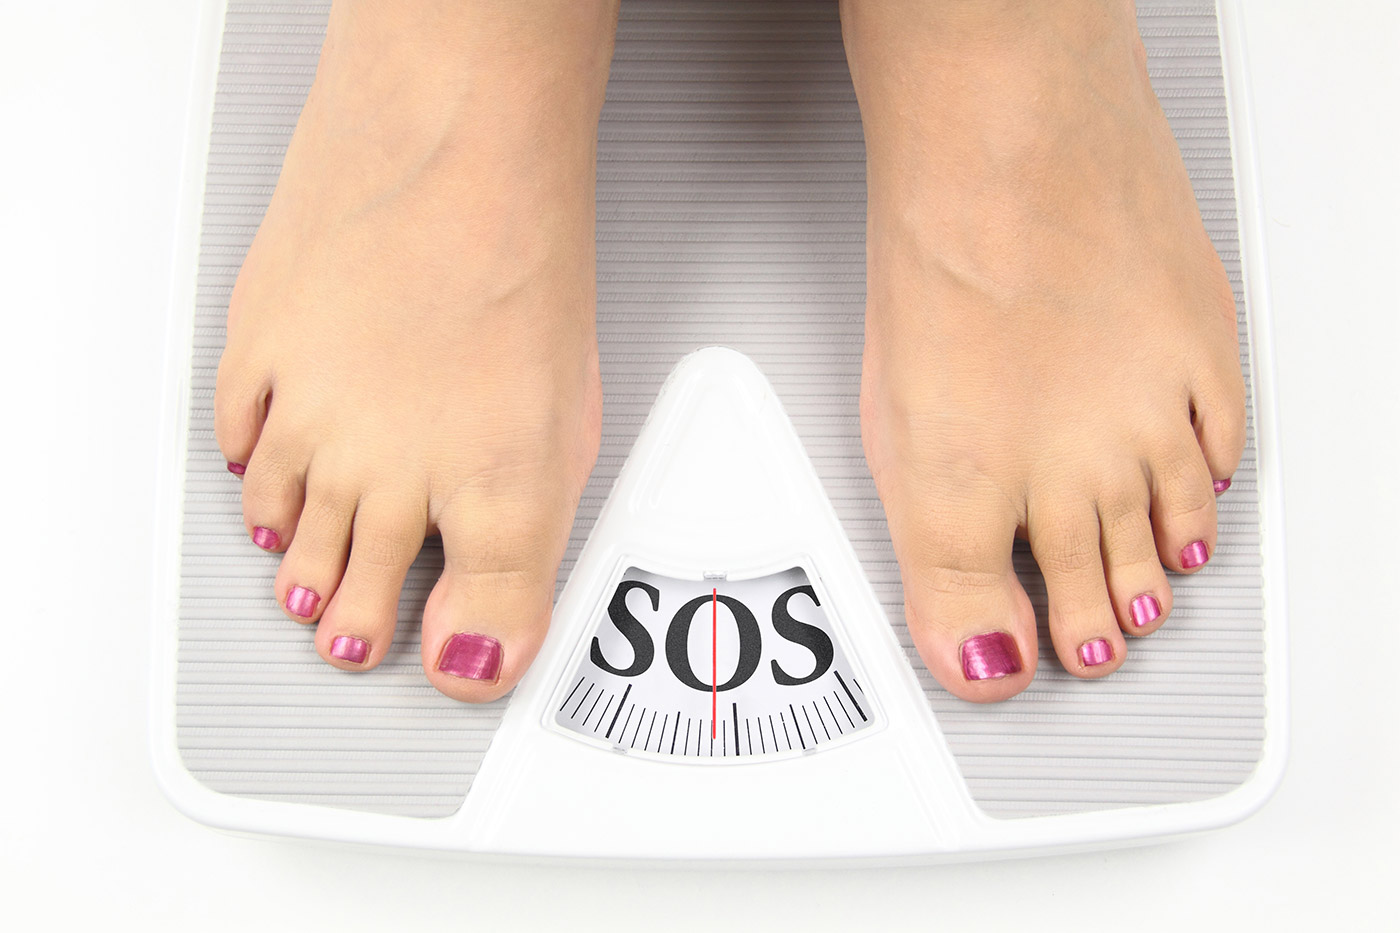 Pérdida rápida de peso sin efecto rebote? - Noticias Grupo Recoletas